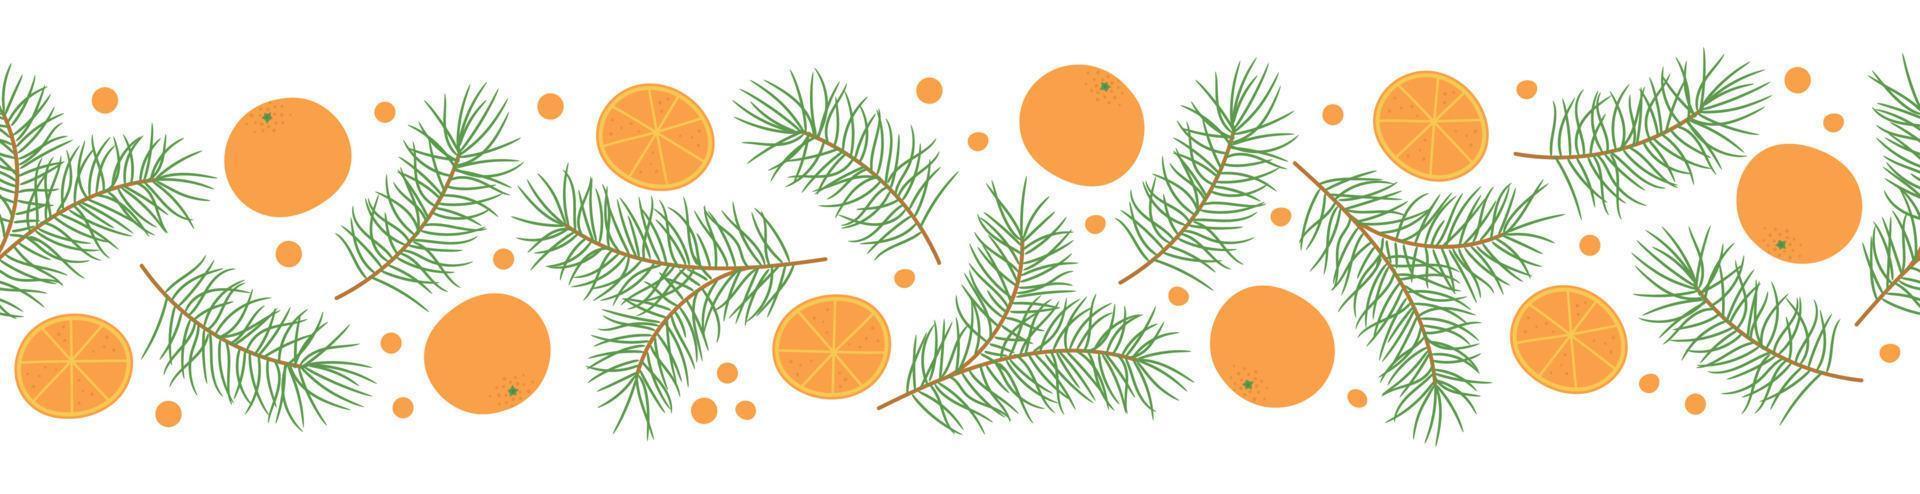 nahtlose Grenze mit Kiefernzweigen und Orangen. vorlage für weihnachtswinterdesign vektor